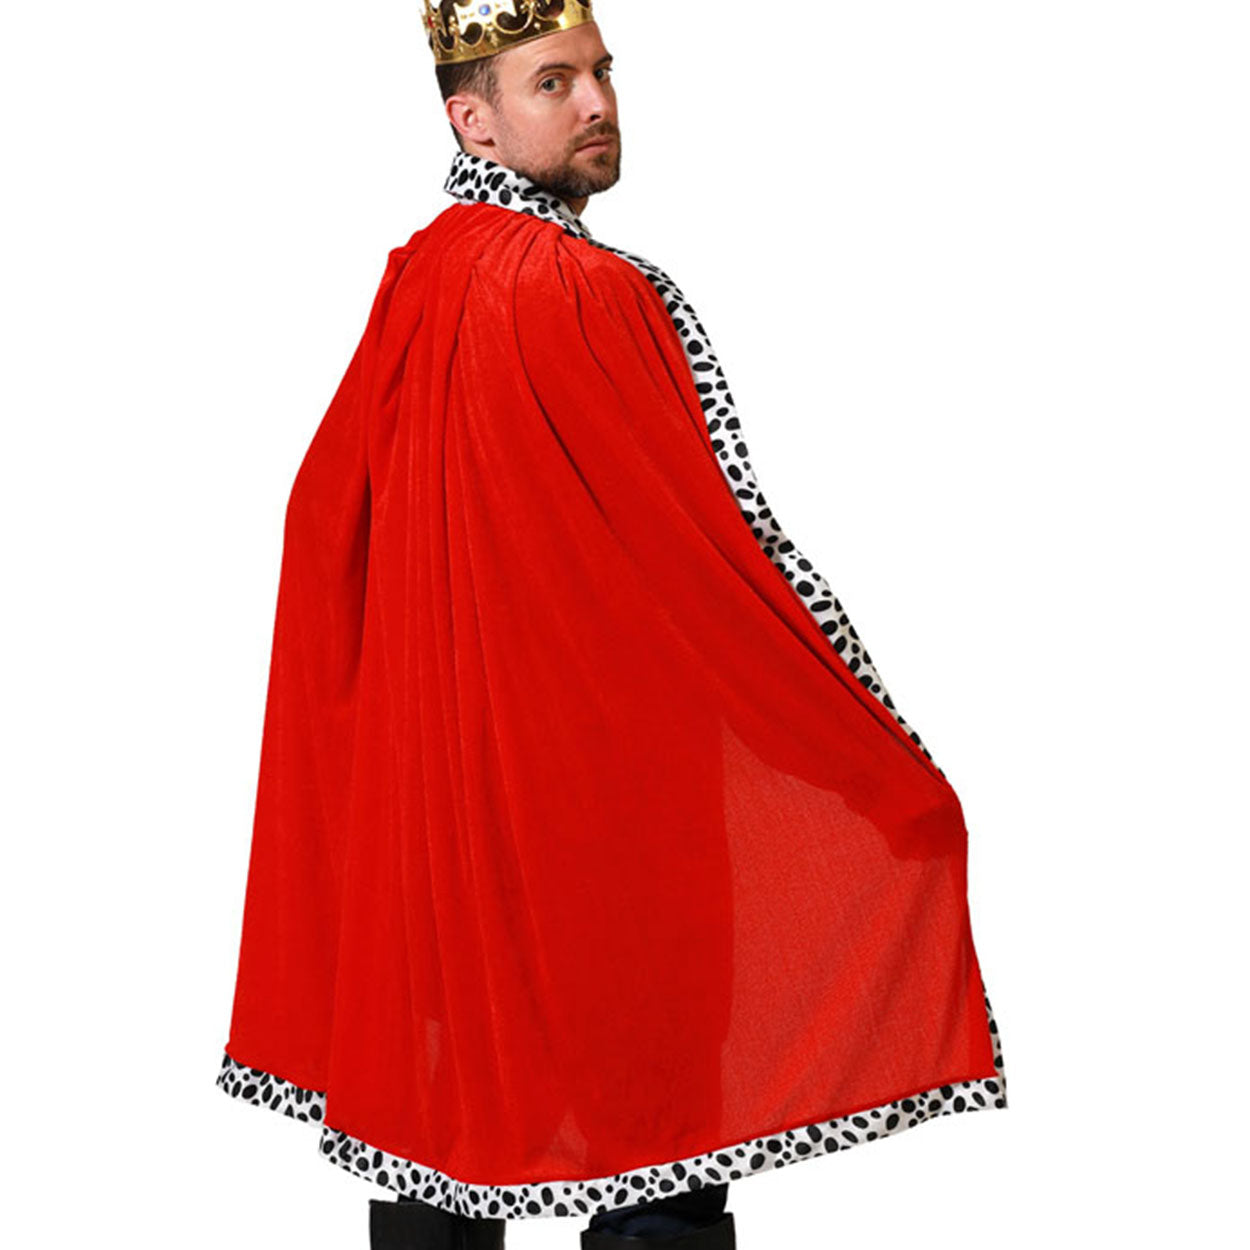 Mantello Rosso Medievale Re King Artu'